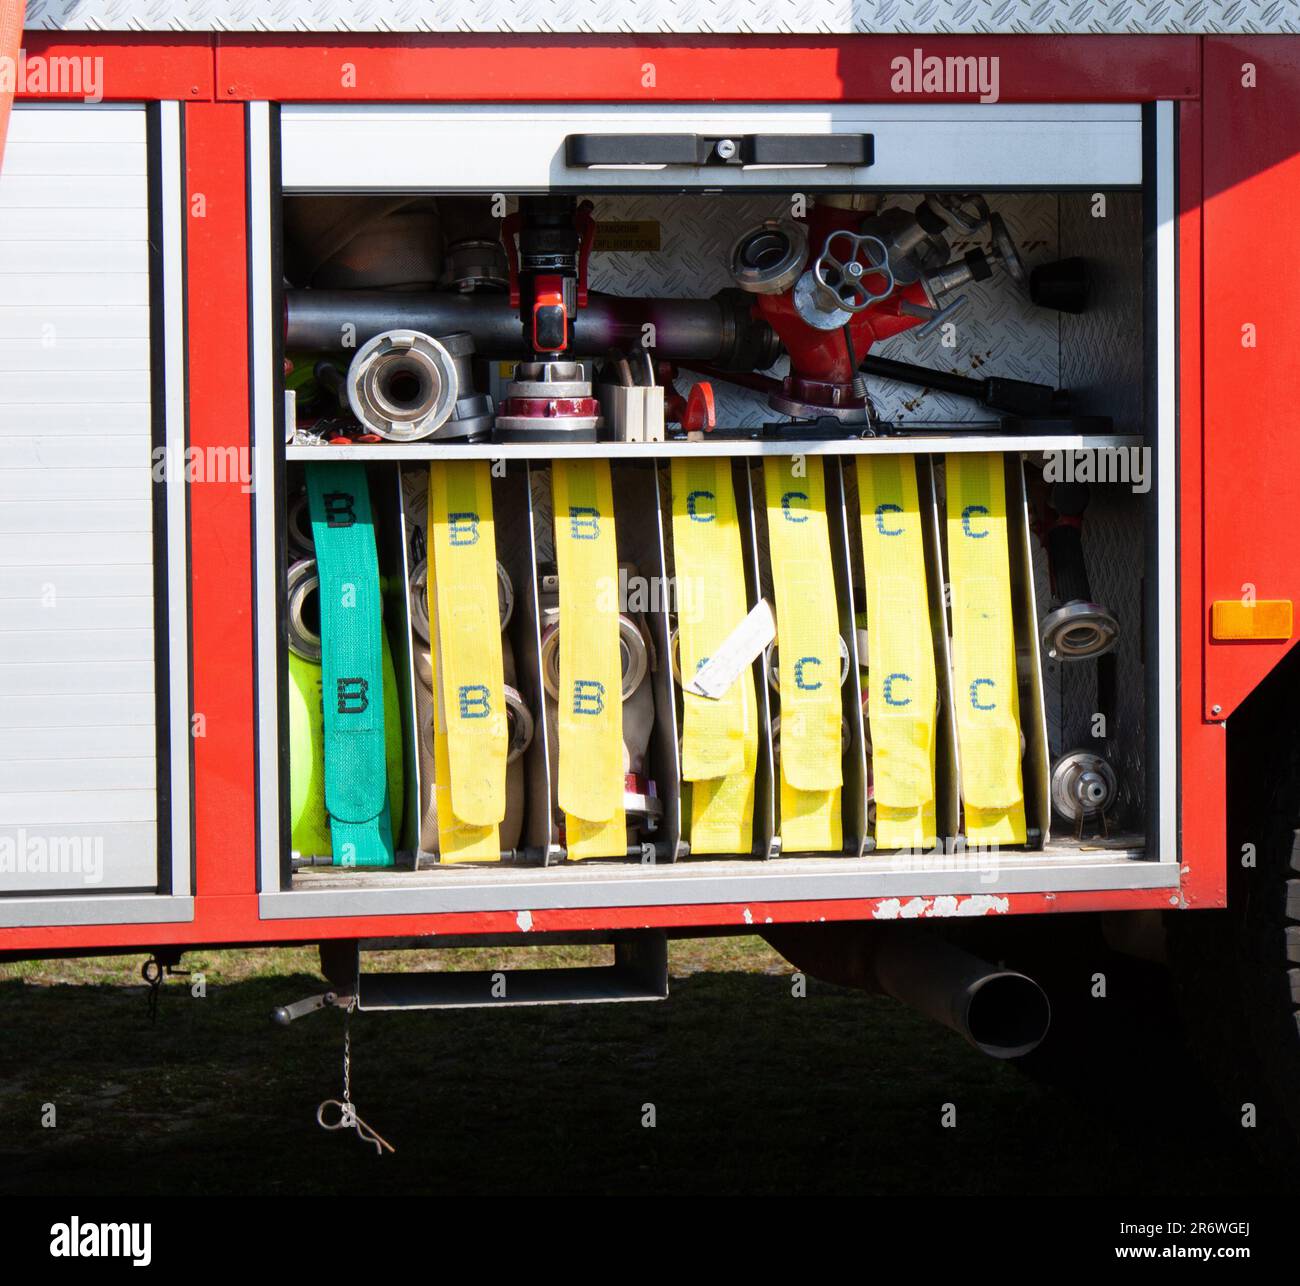 Geräteraum eines Feuerwehrautos mit Schläuchen die Wasser pumpen Stock Photo